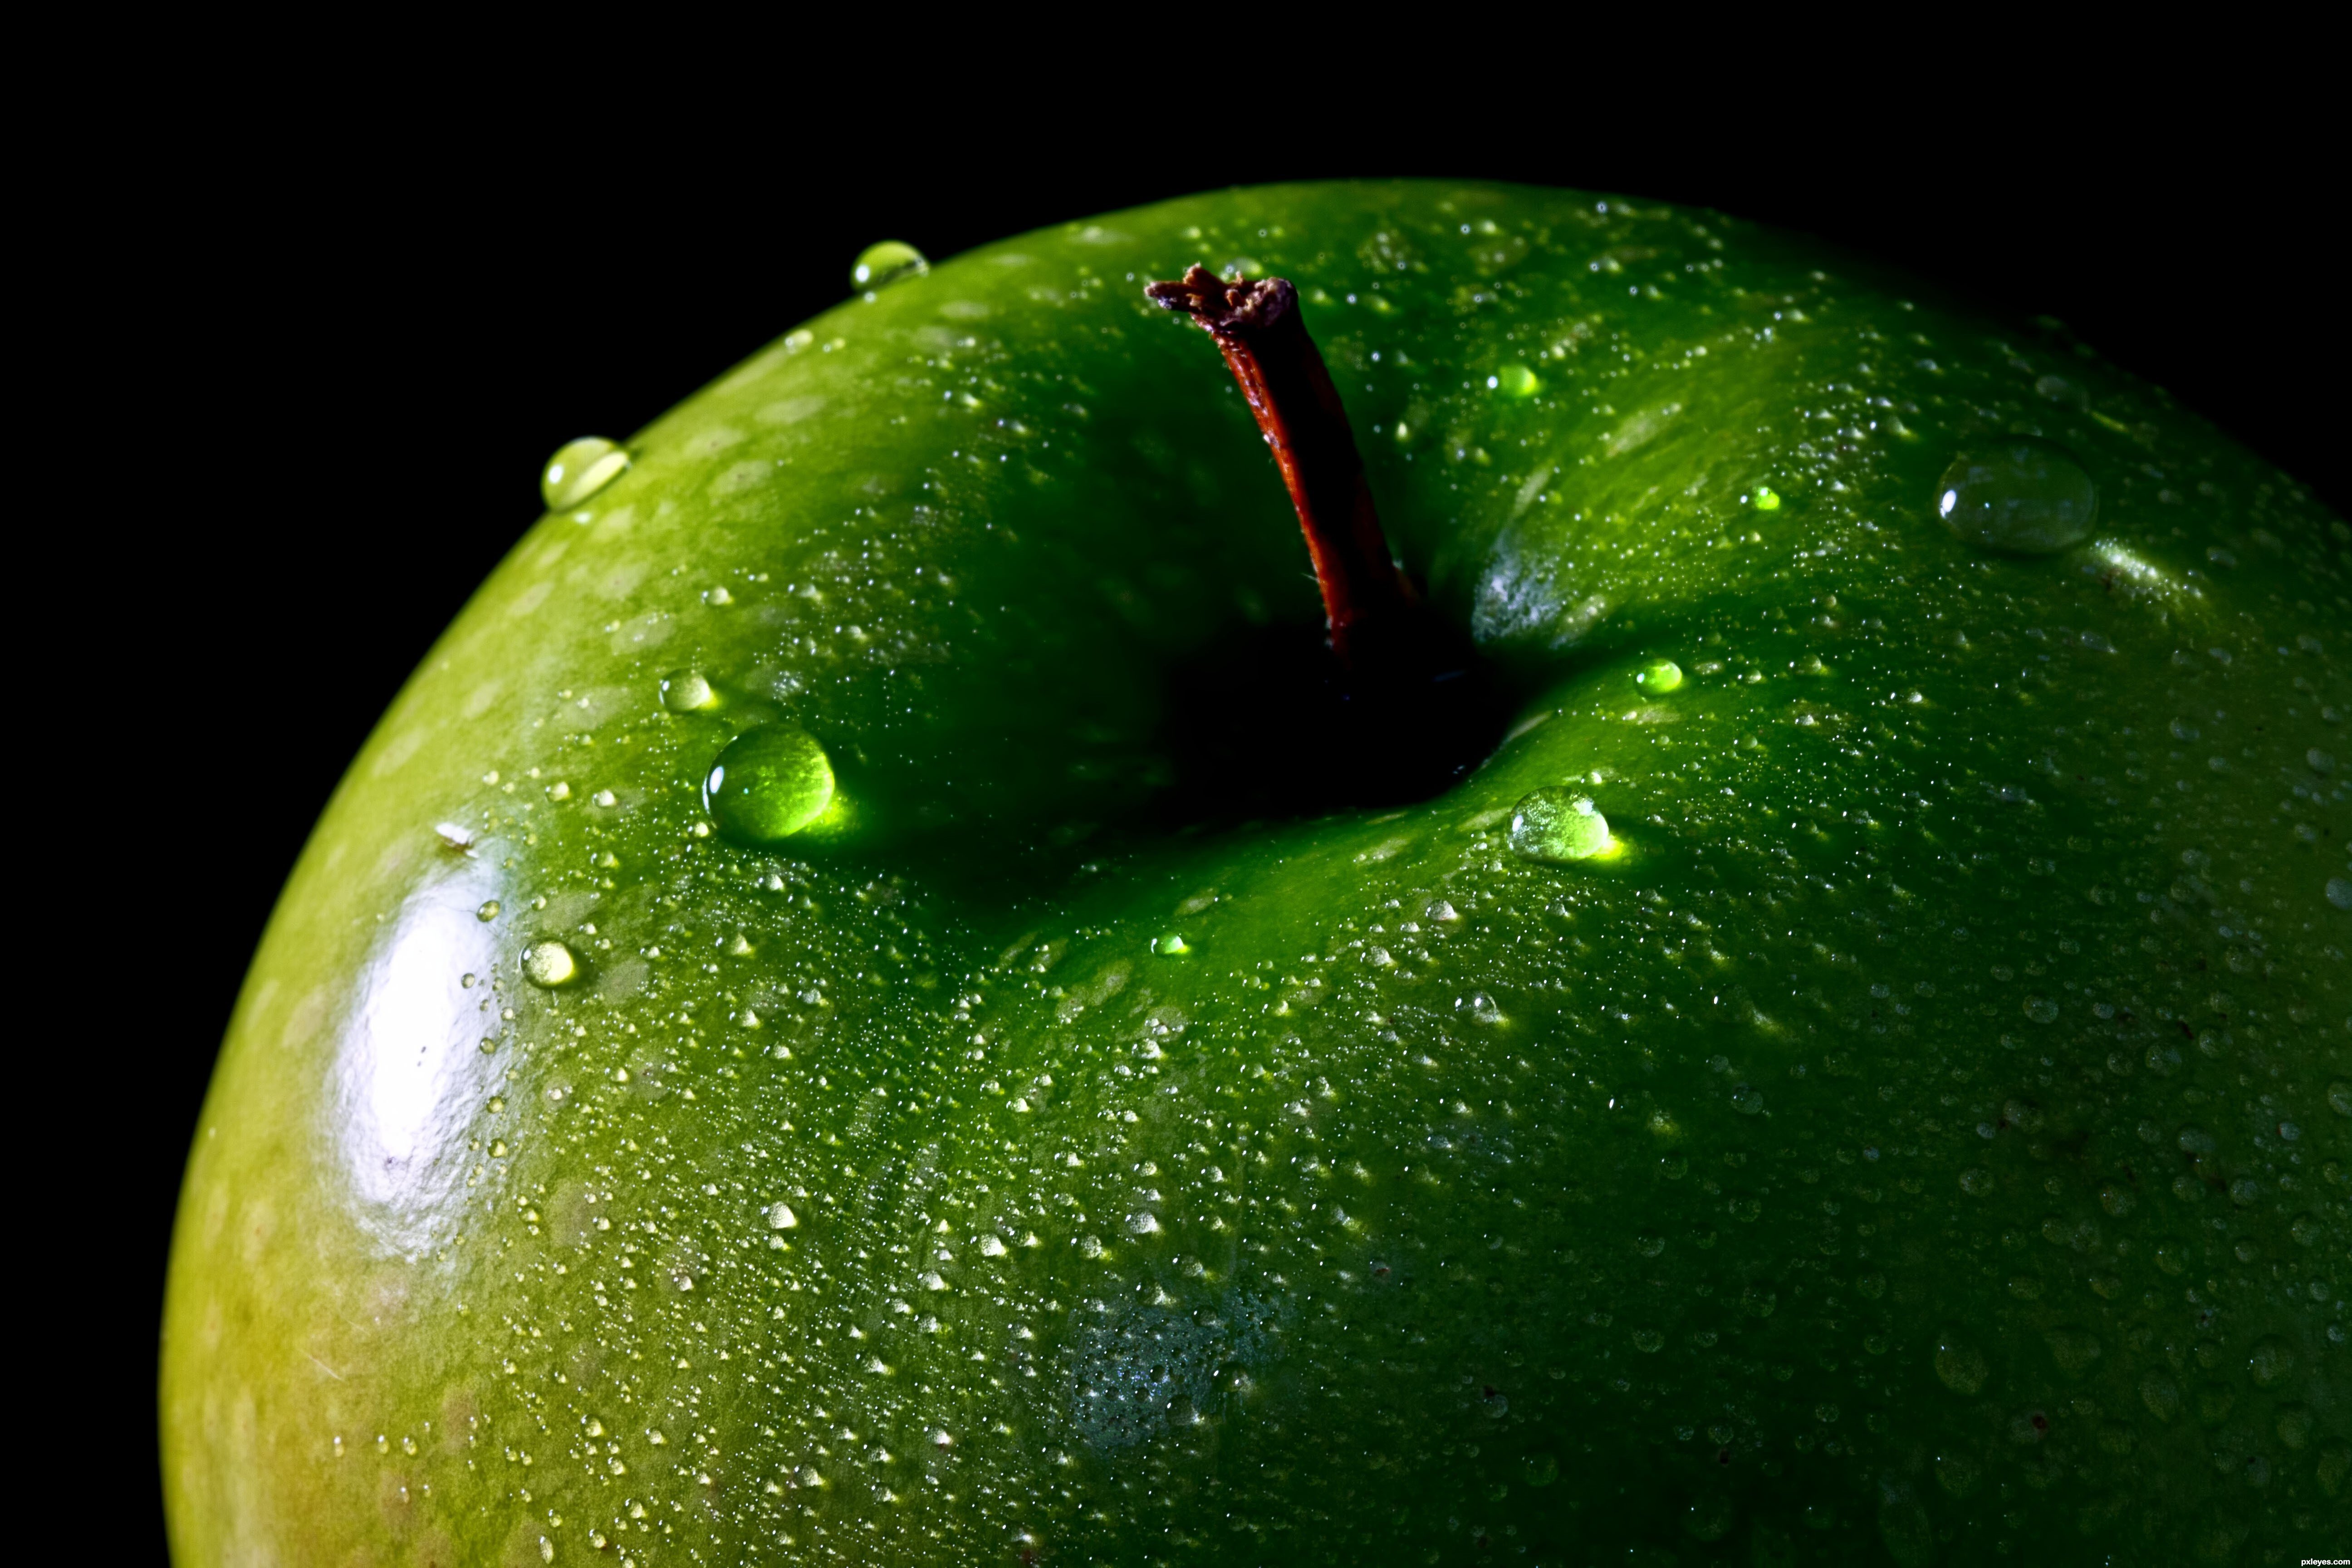 Яблоня сочное. Эпл Грин яблоко. Яблоки зеленые. Яблочно зеленый цвет. Сочный зеленый цвет.